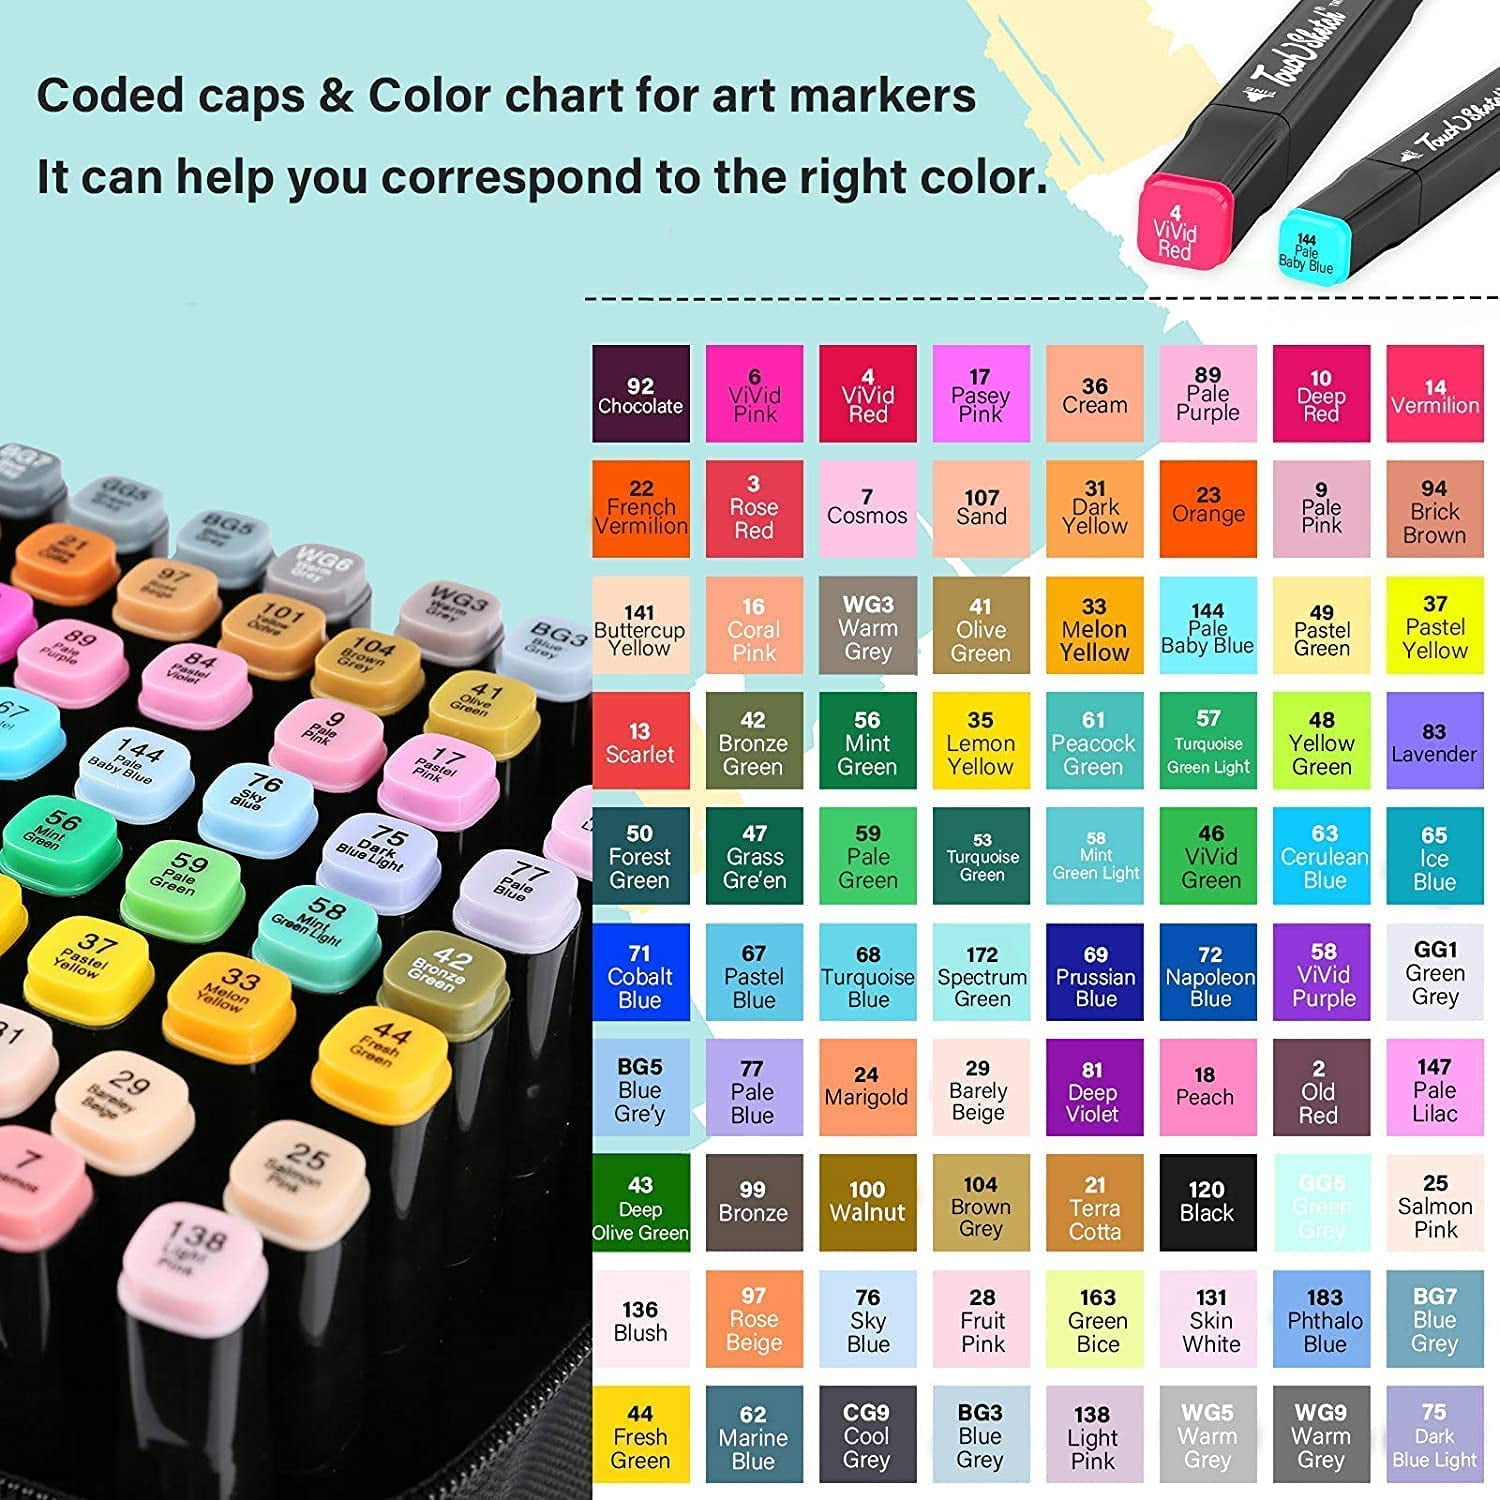 Kryc-chfine Art Markerpen Set,80 Colors Dual Tip Permanent Sketch